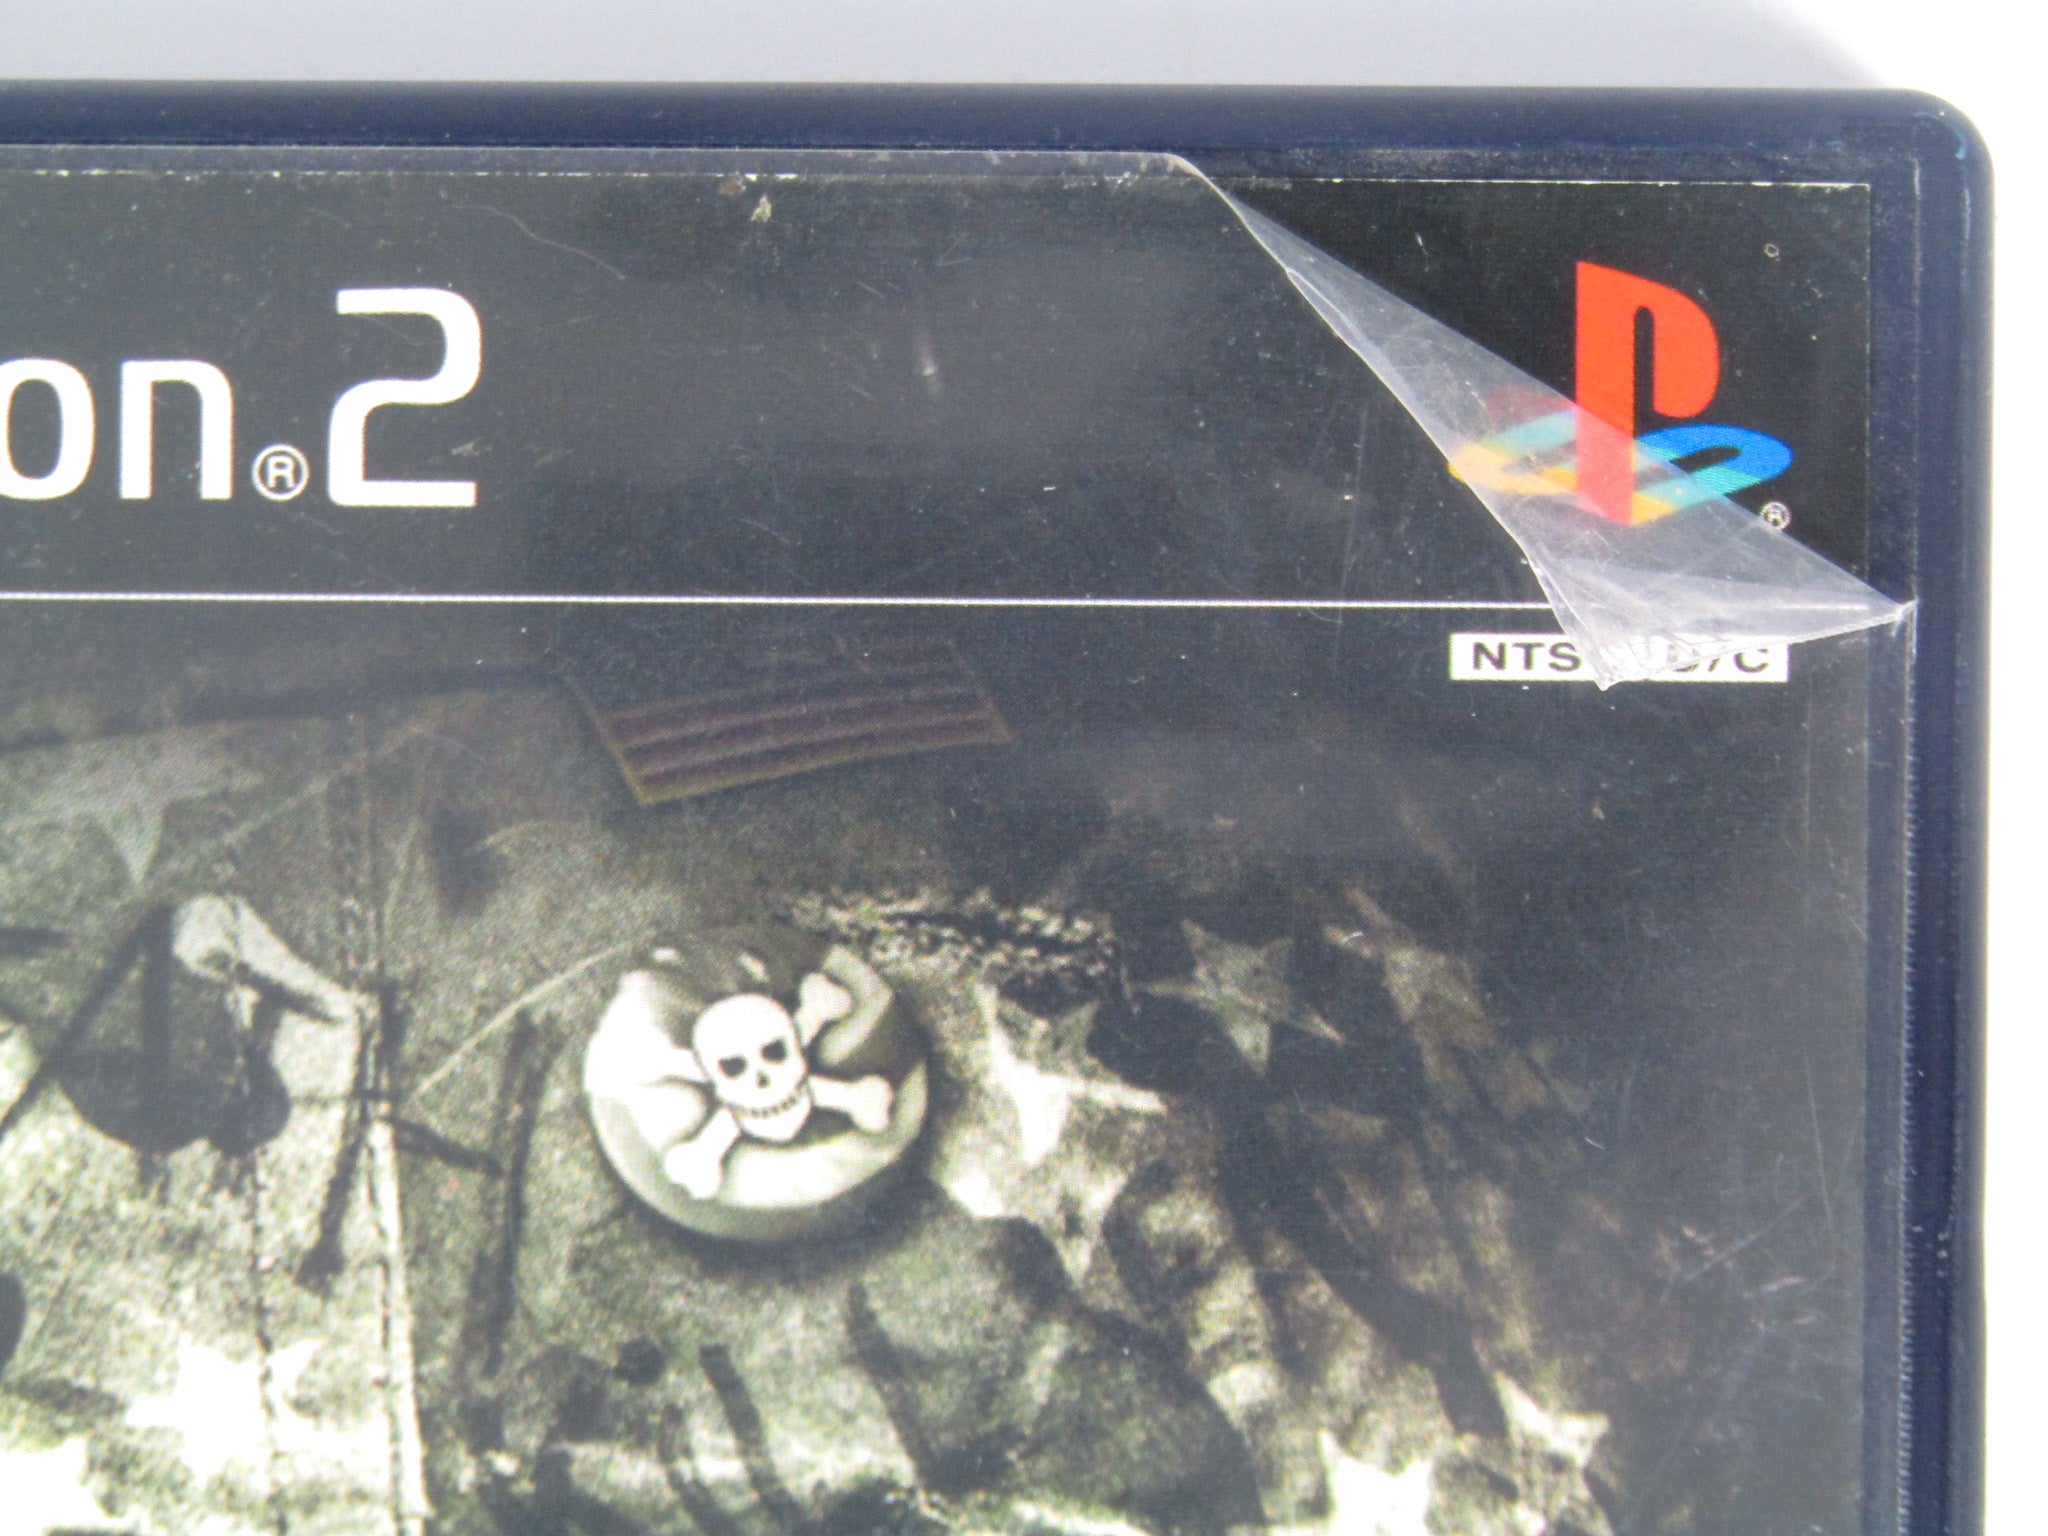 SHELLSHOCK : NAM'67 PS2 od autorów KILLZONE PLAYSTATION 2 wojna w Wietnamie  - Stan: używany 59 zł - Sklepy, Opinie, Ceny w